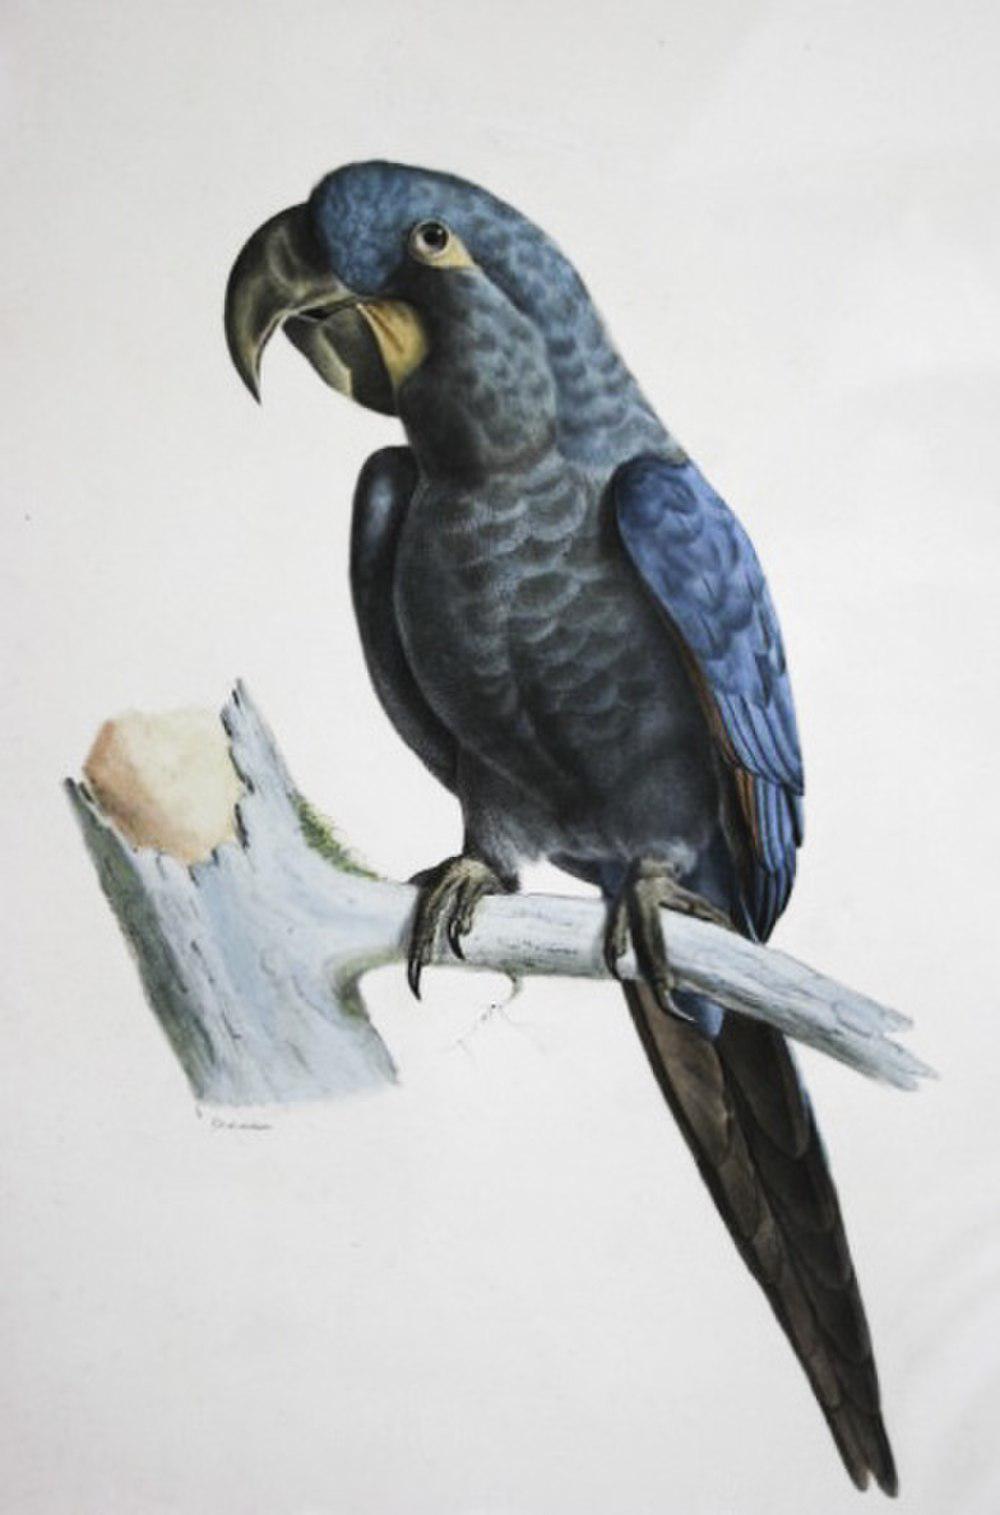 灰绿金刚鹦鹉 / Glaucous Macaw / Anodorhynchus glaucus